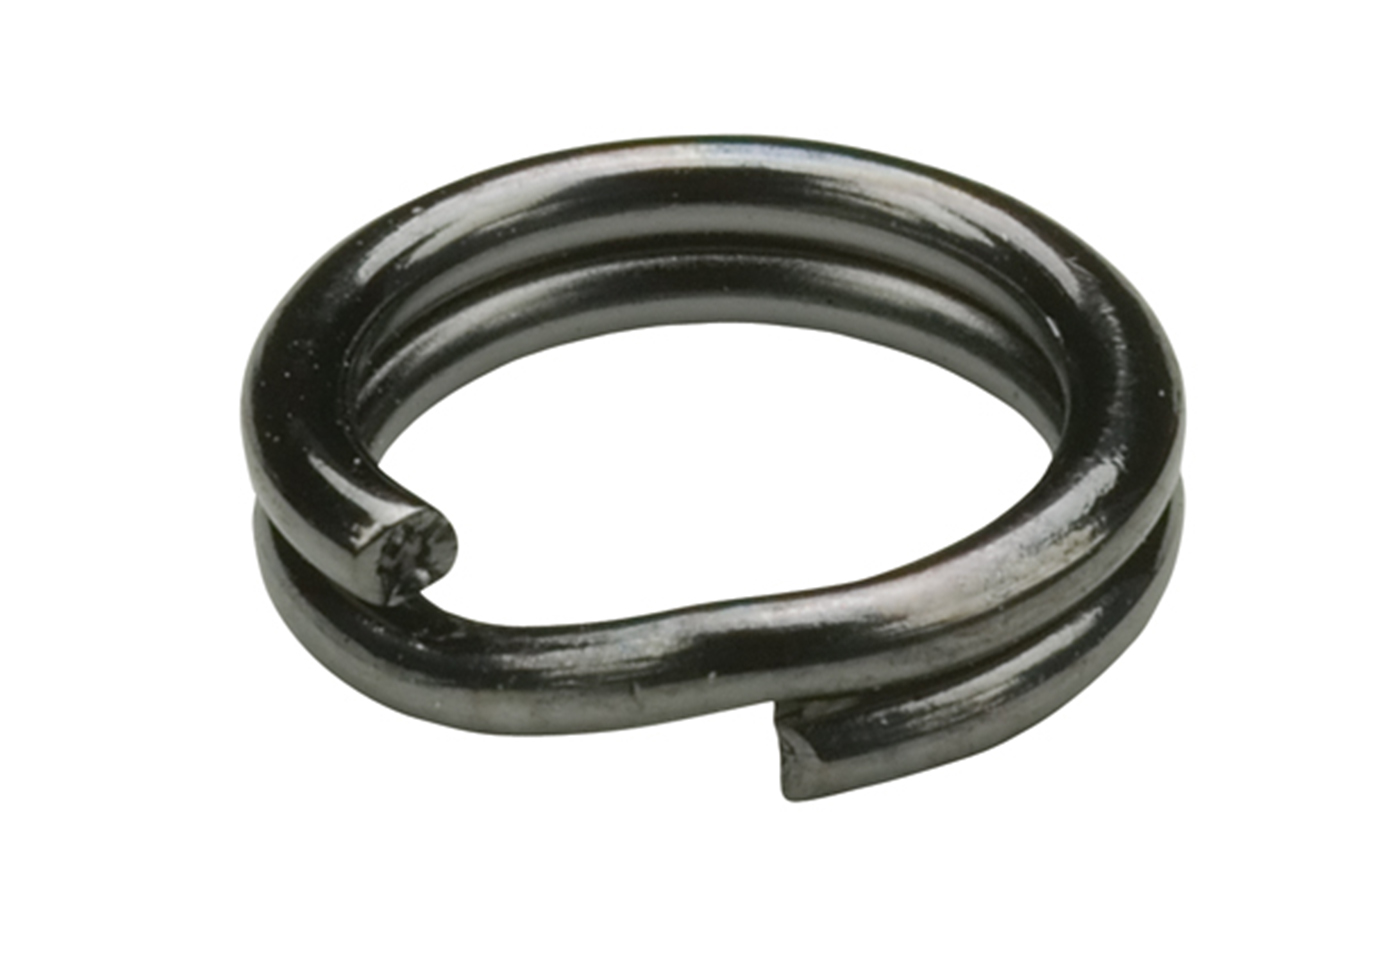 Hyper Wire Split Rings - Black Chrome